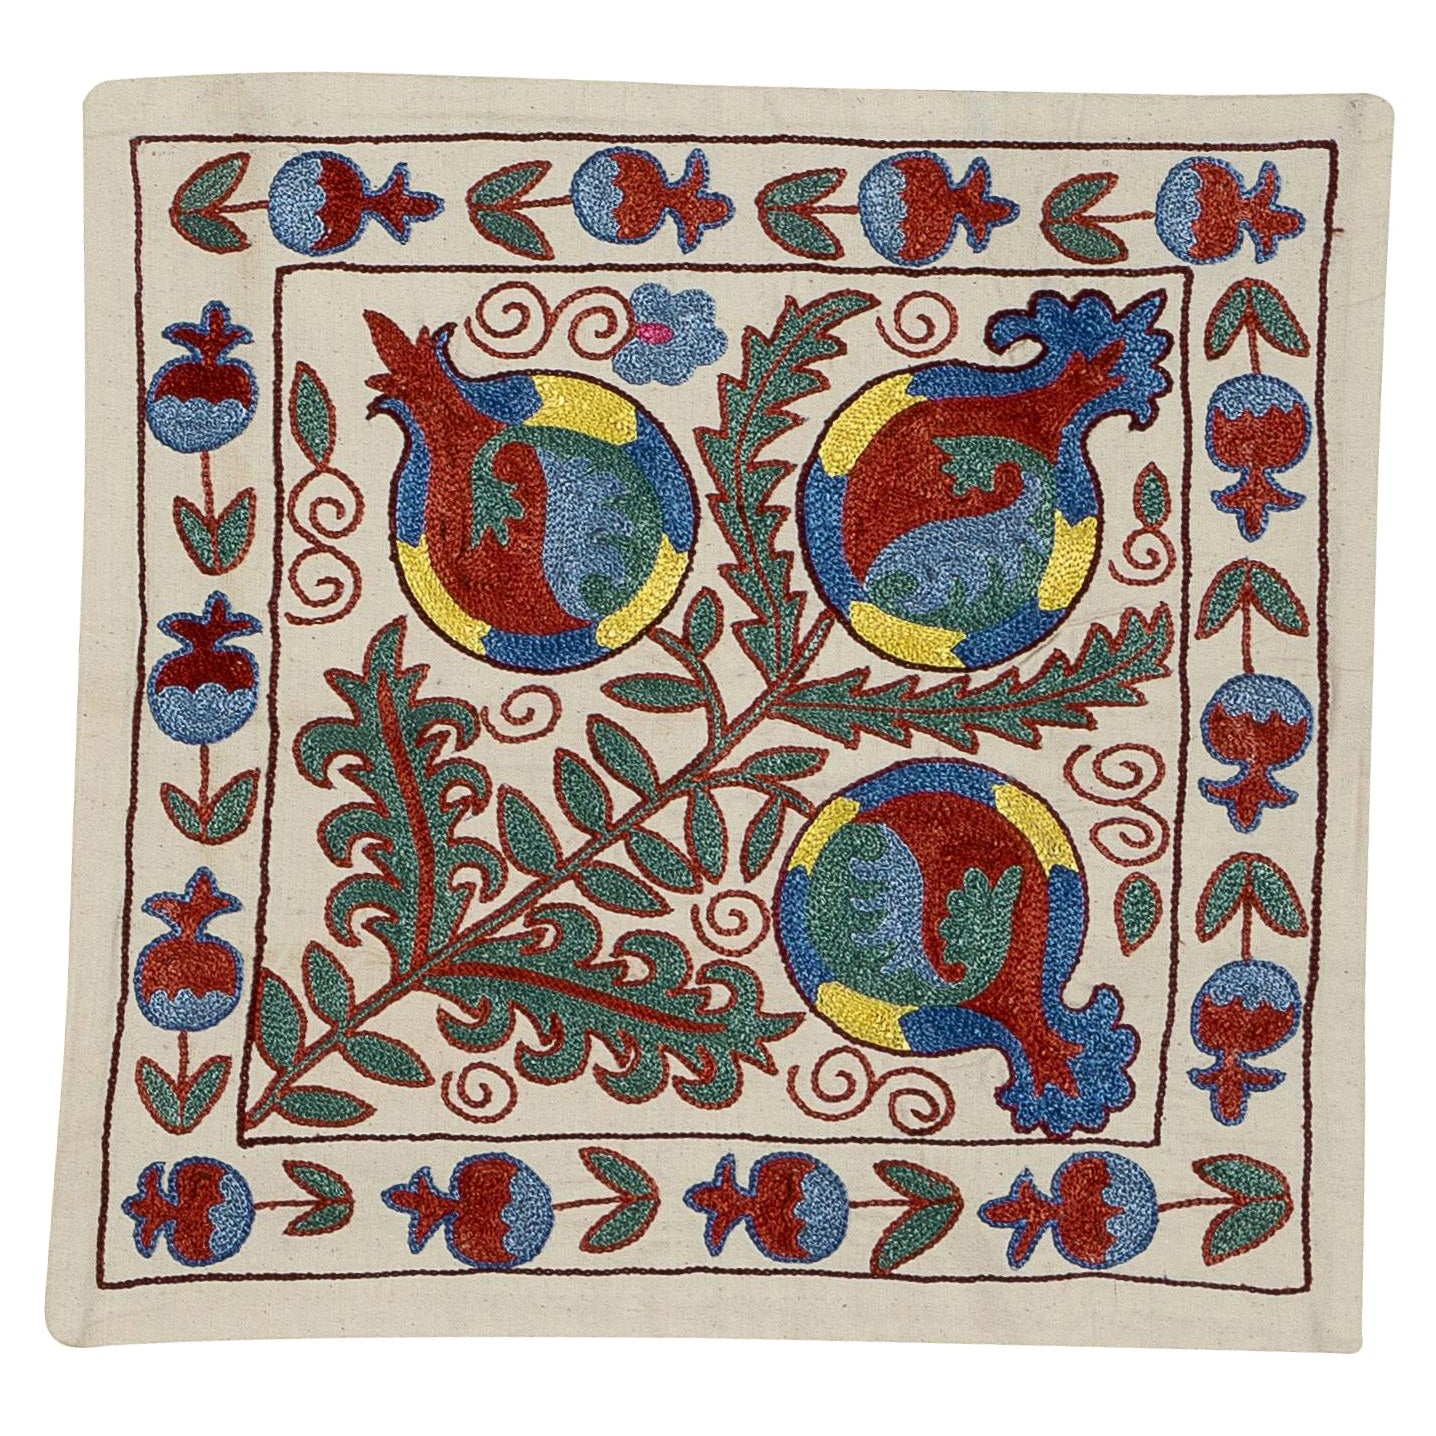 Boîtier d'oreiller décoratif Suzani 18"x24" en soie brodée Sham, couverture de coussin en soie